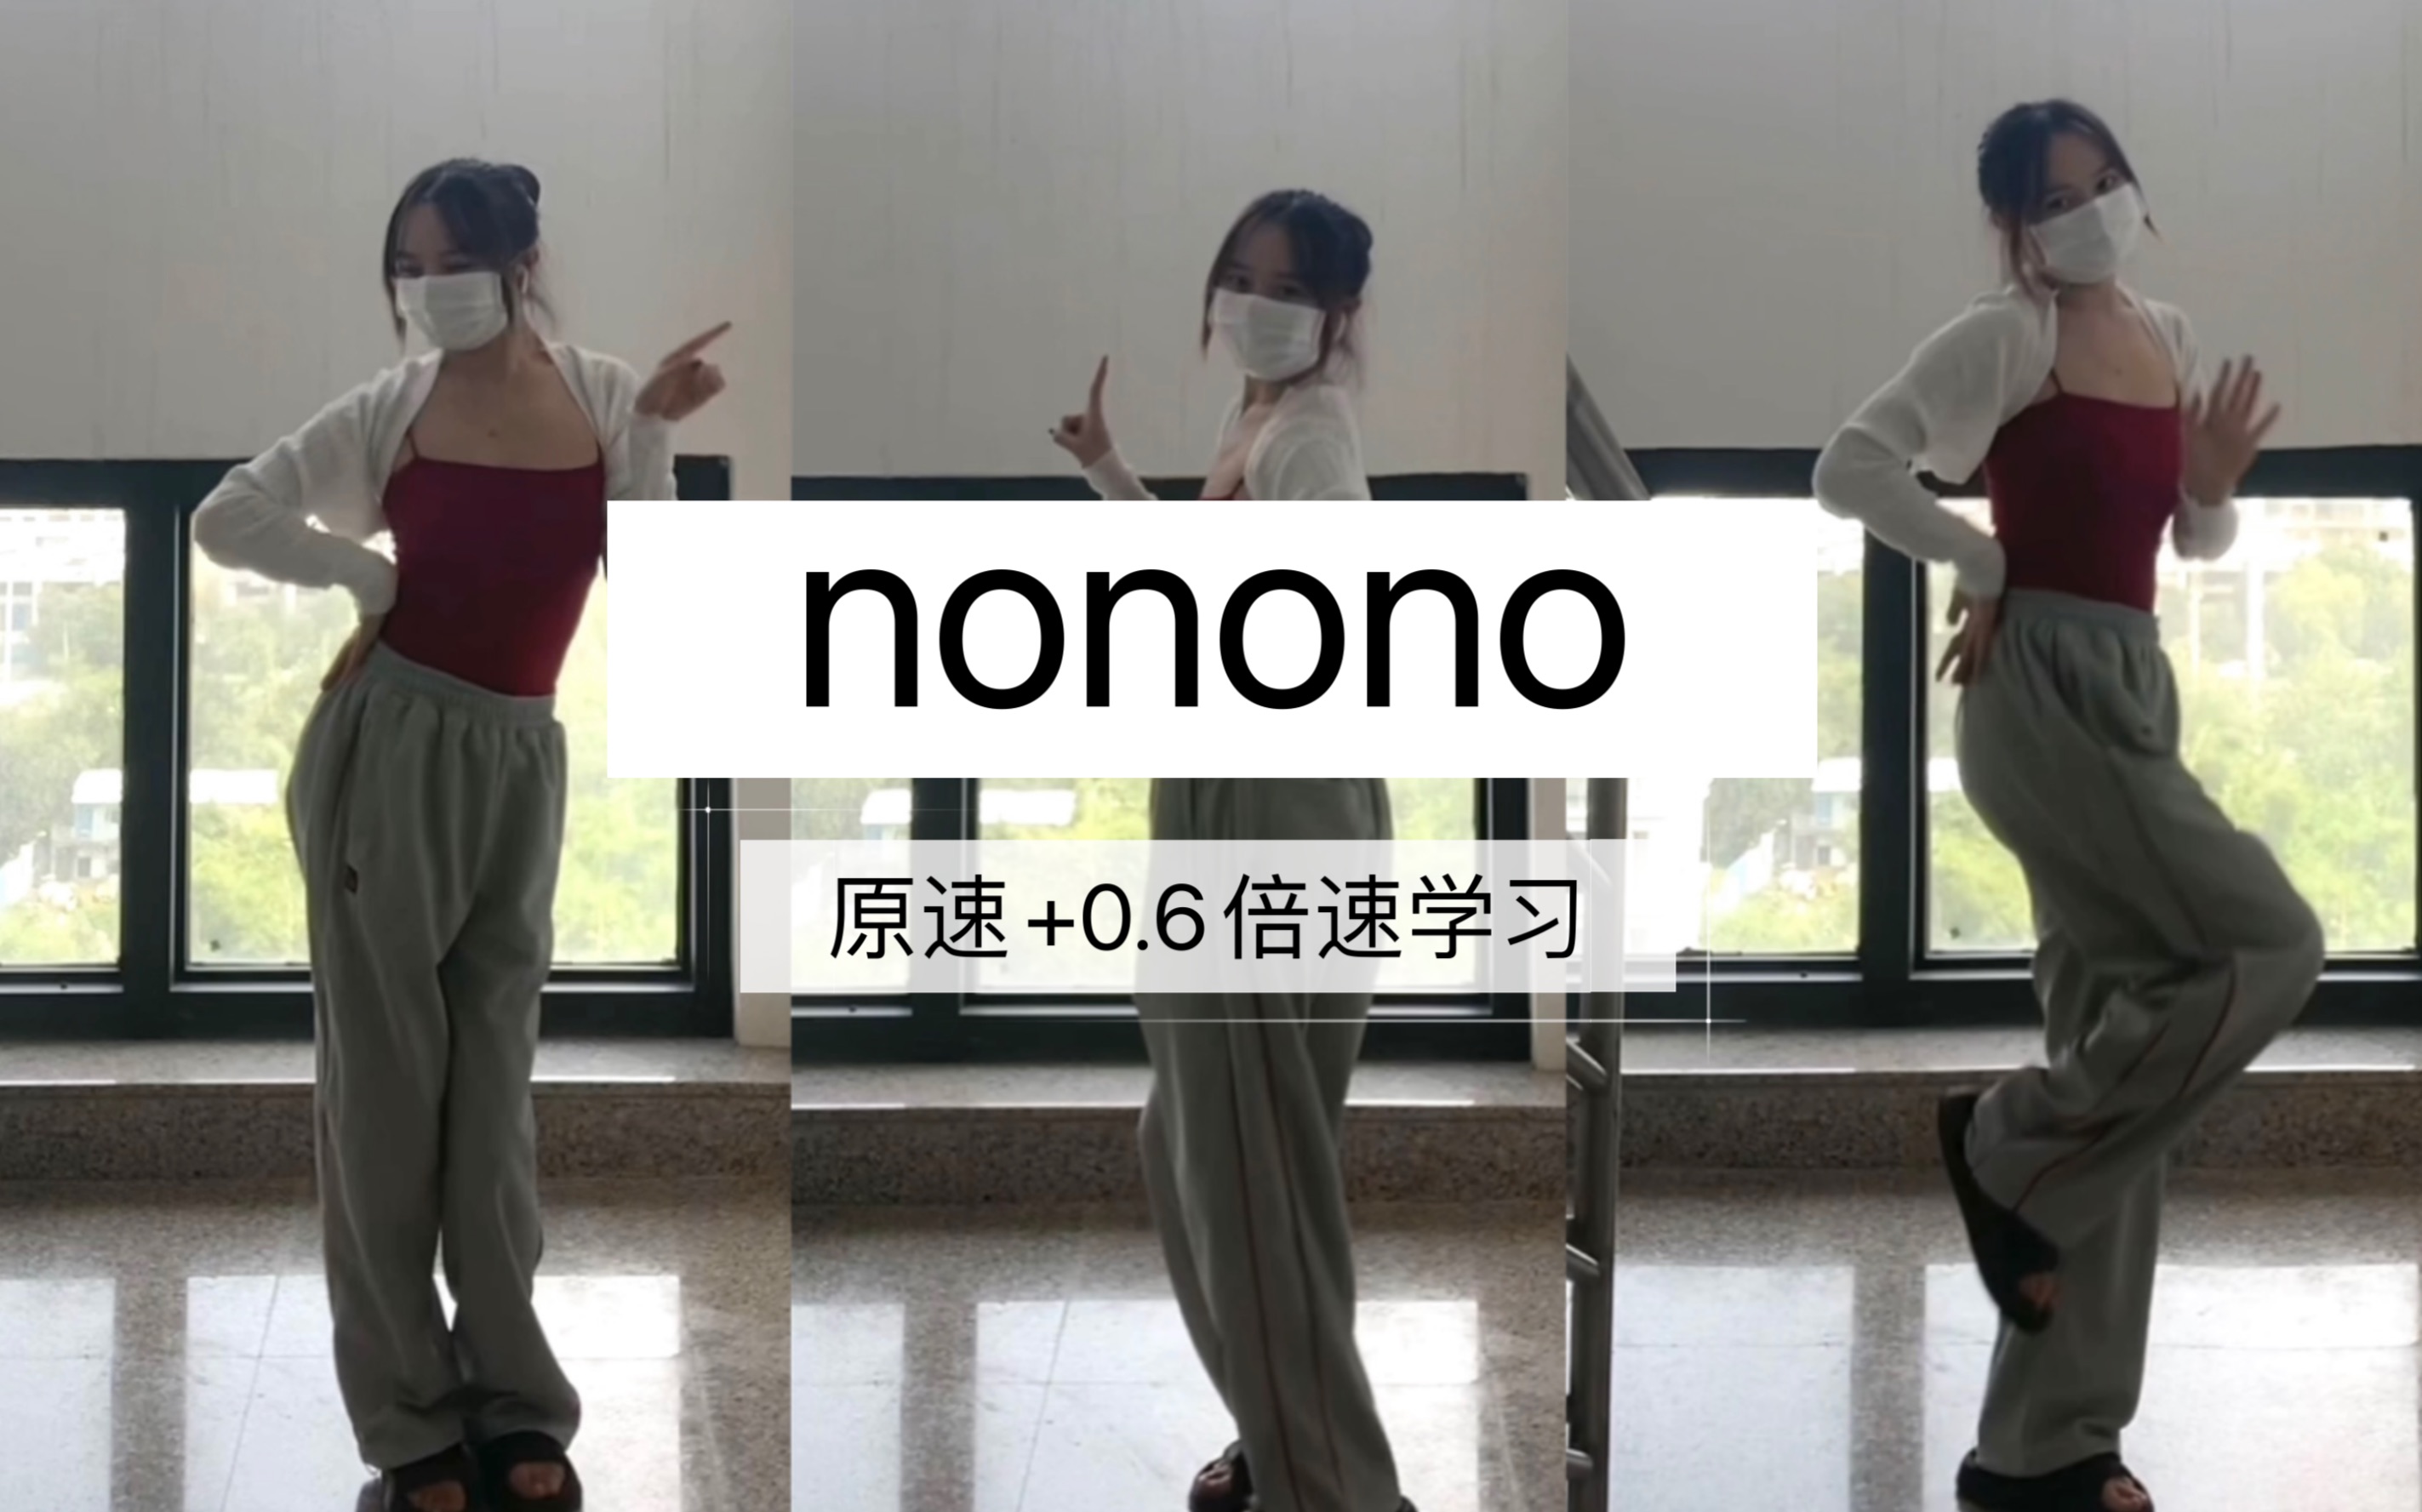 零基础可自学的超级简单舞蹈《nonono》舞蹈翻跳 （原速+0.6倍速学习）